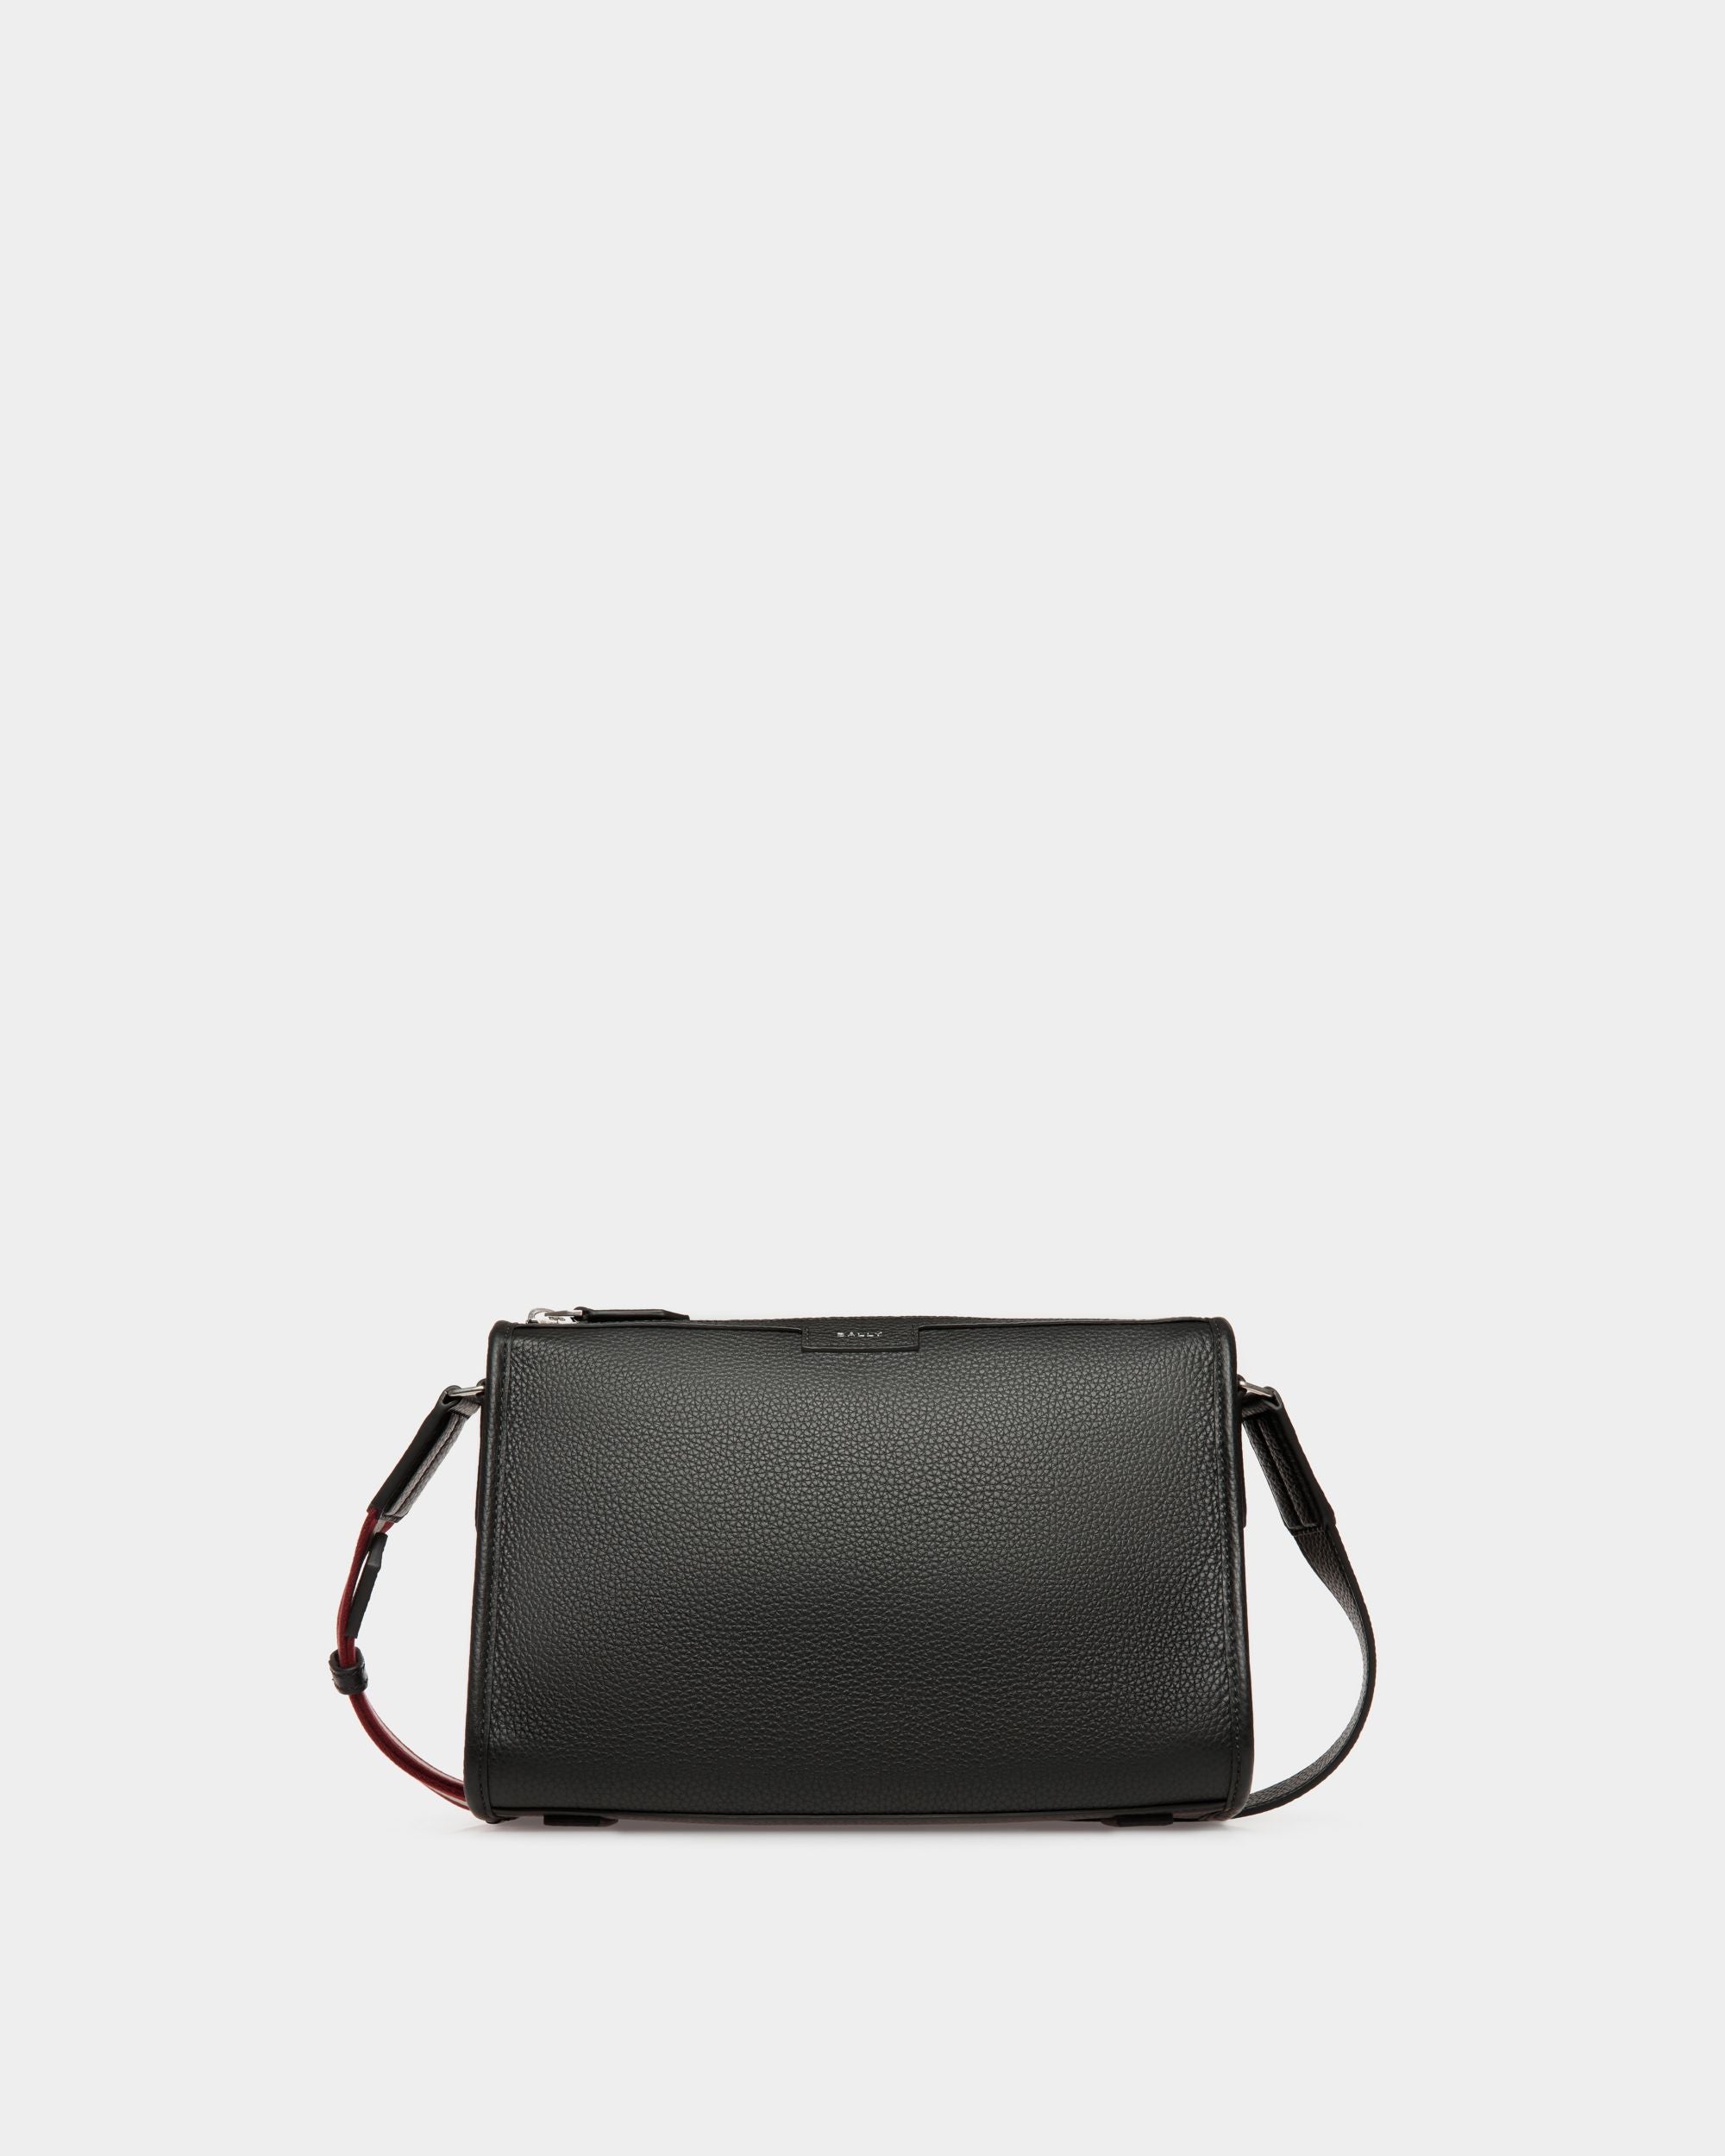 Code | Kleine Messenger-Tasche für Herren aus genarbtem schwarzem Leder | Bally | Still Life Vorderseite